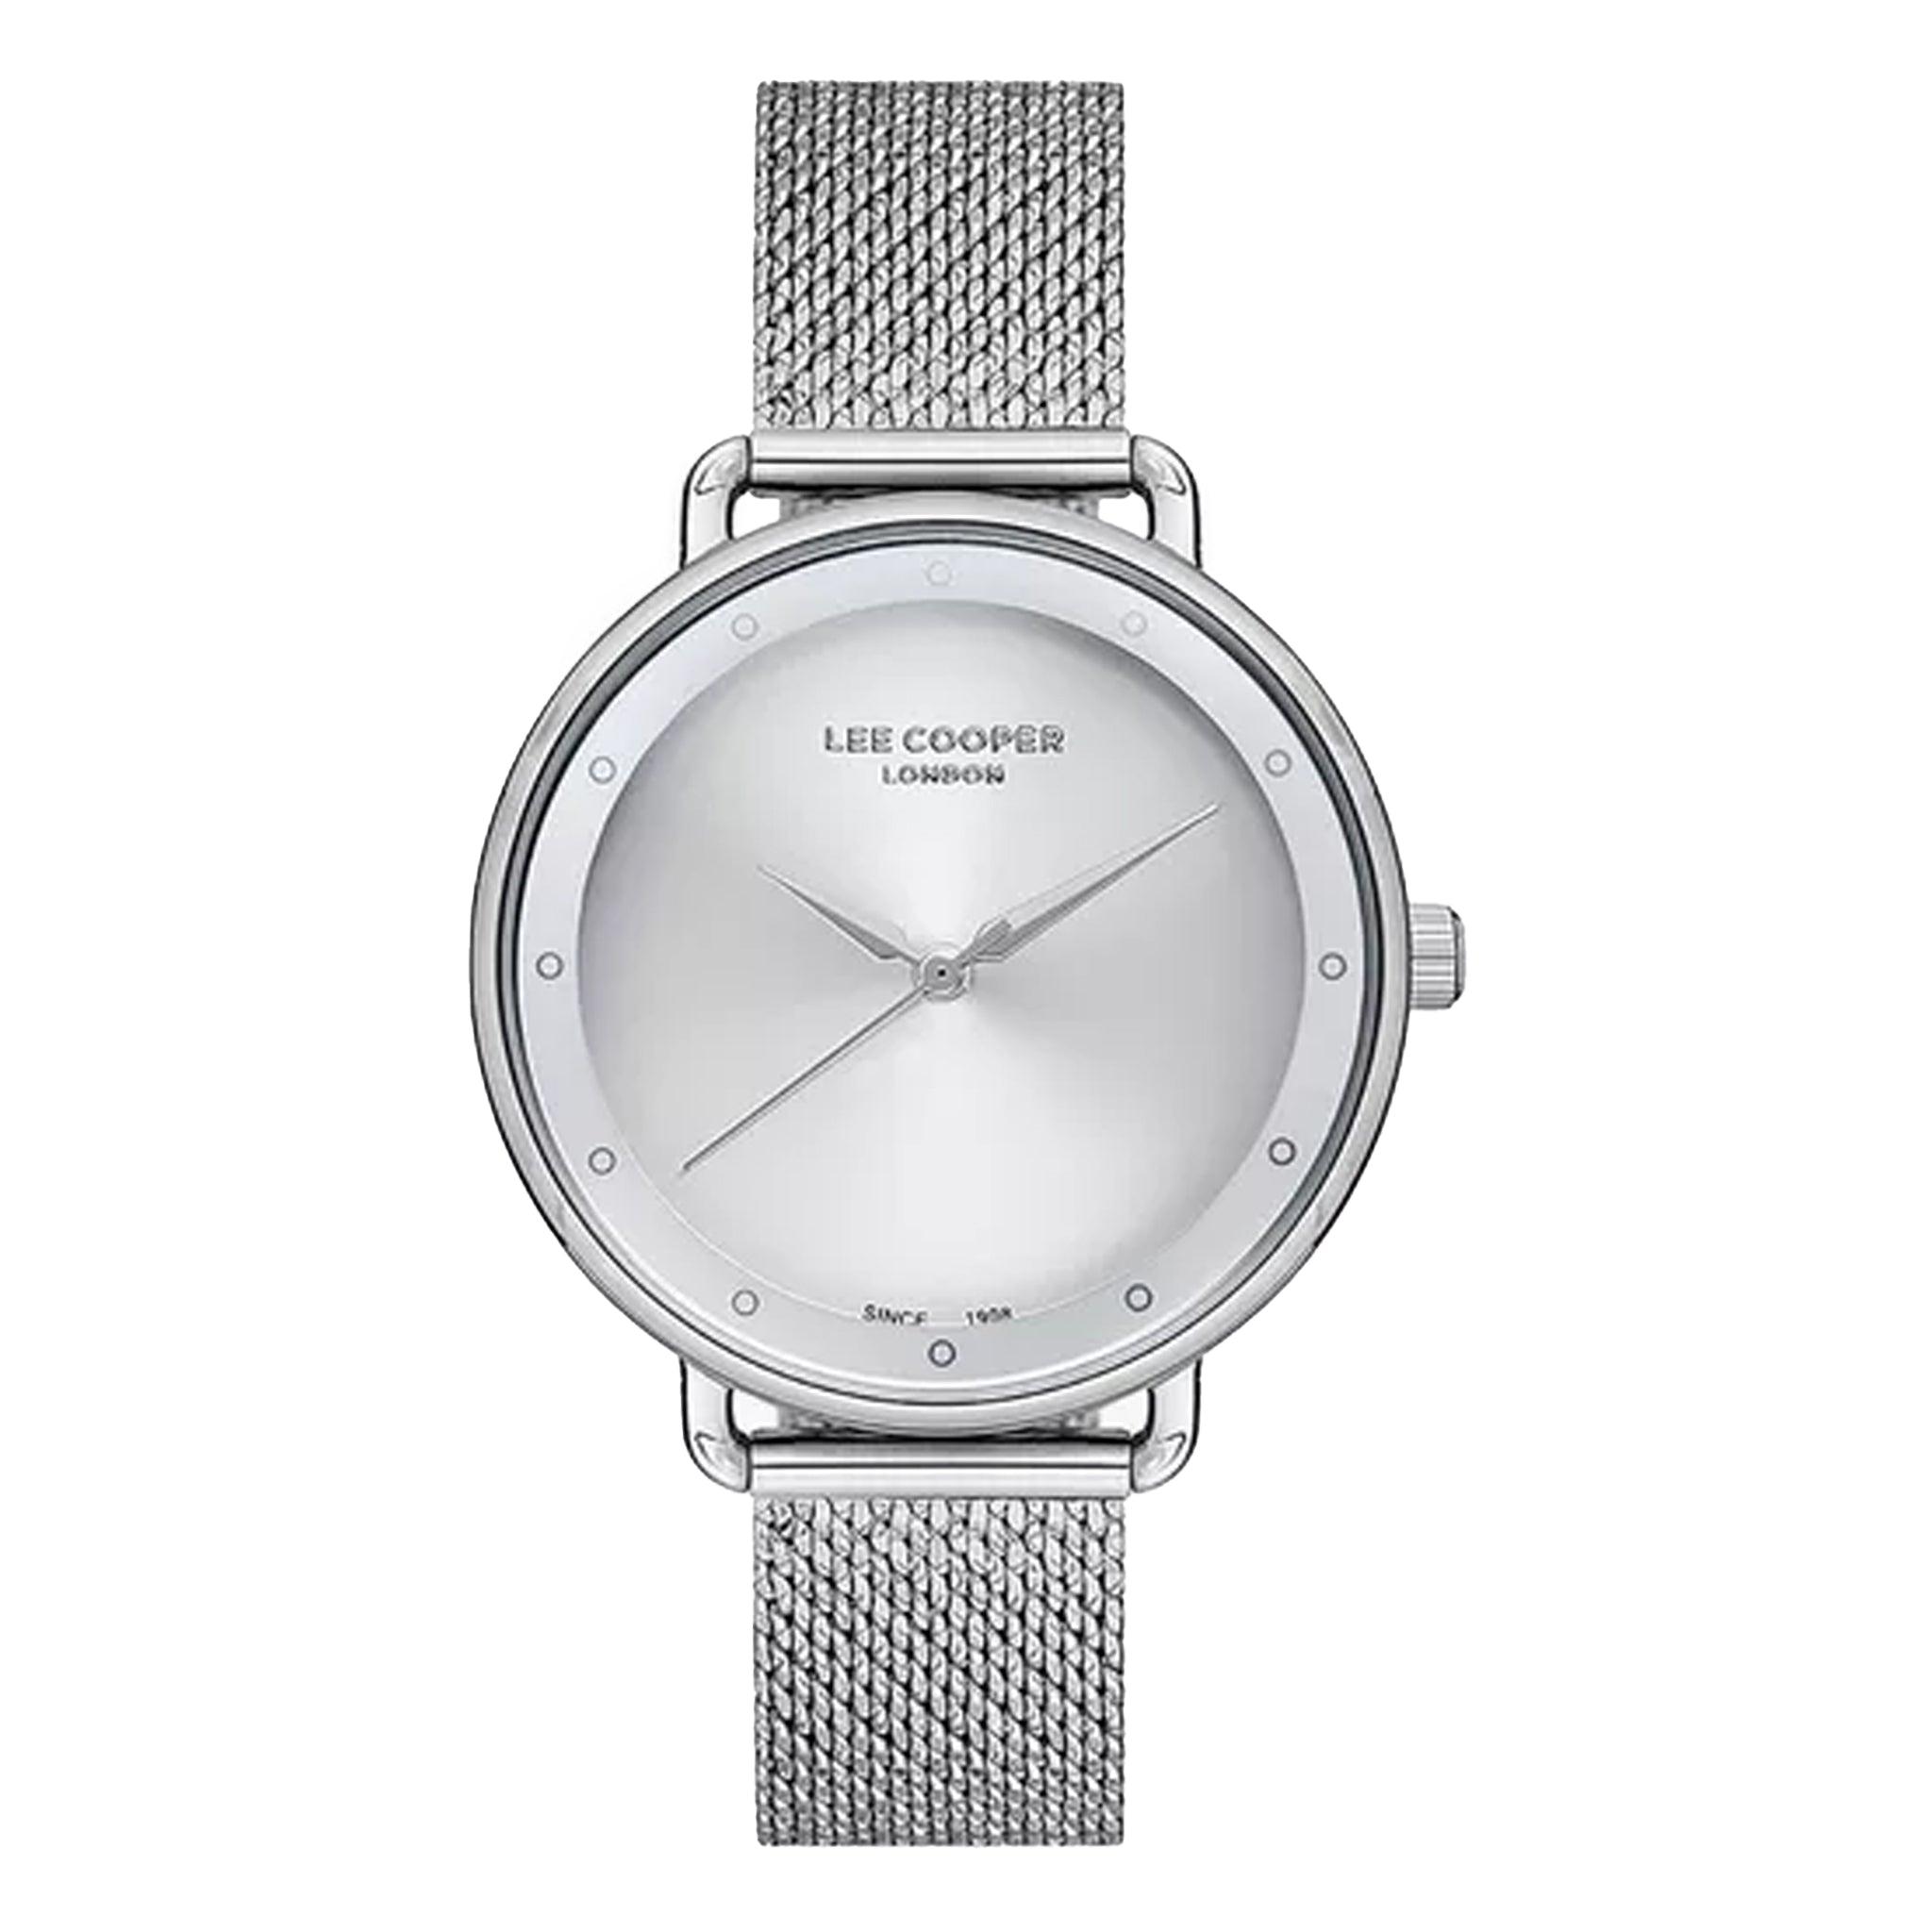 ساعة يد نسائية - فضي و مينا باللون الفضي - بحزام فولاذي مقاوم للصدأ لي كوبر Lee Cooper Women's Silver Analog Mesh Strap Watch